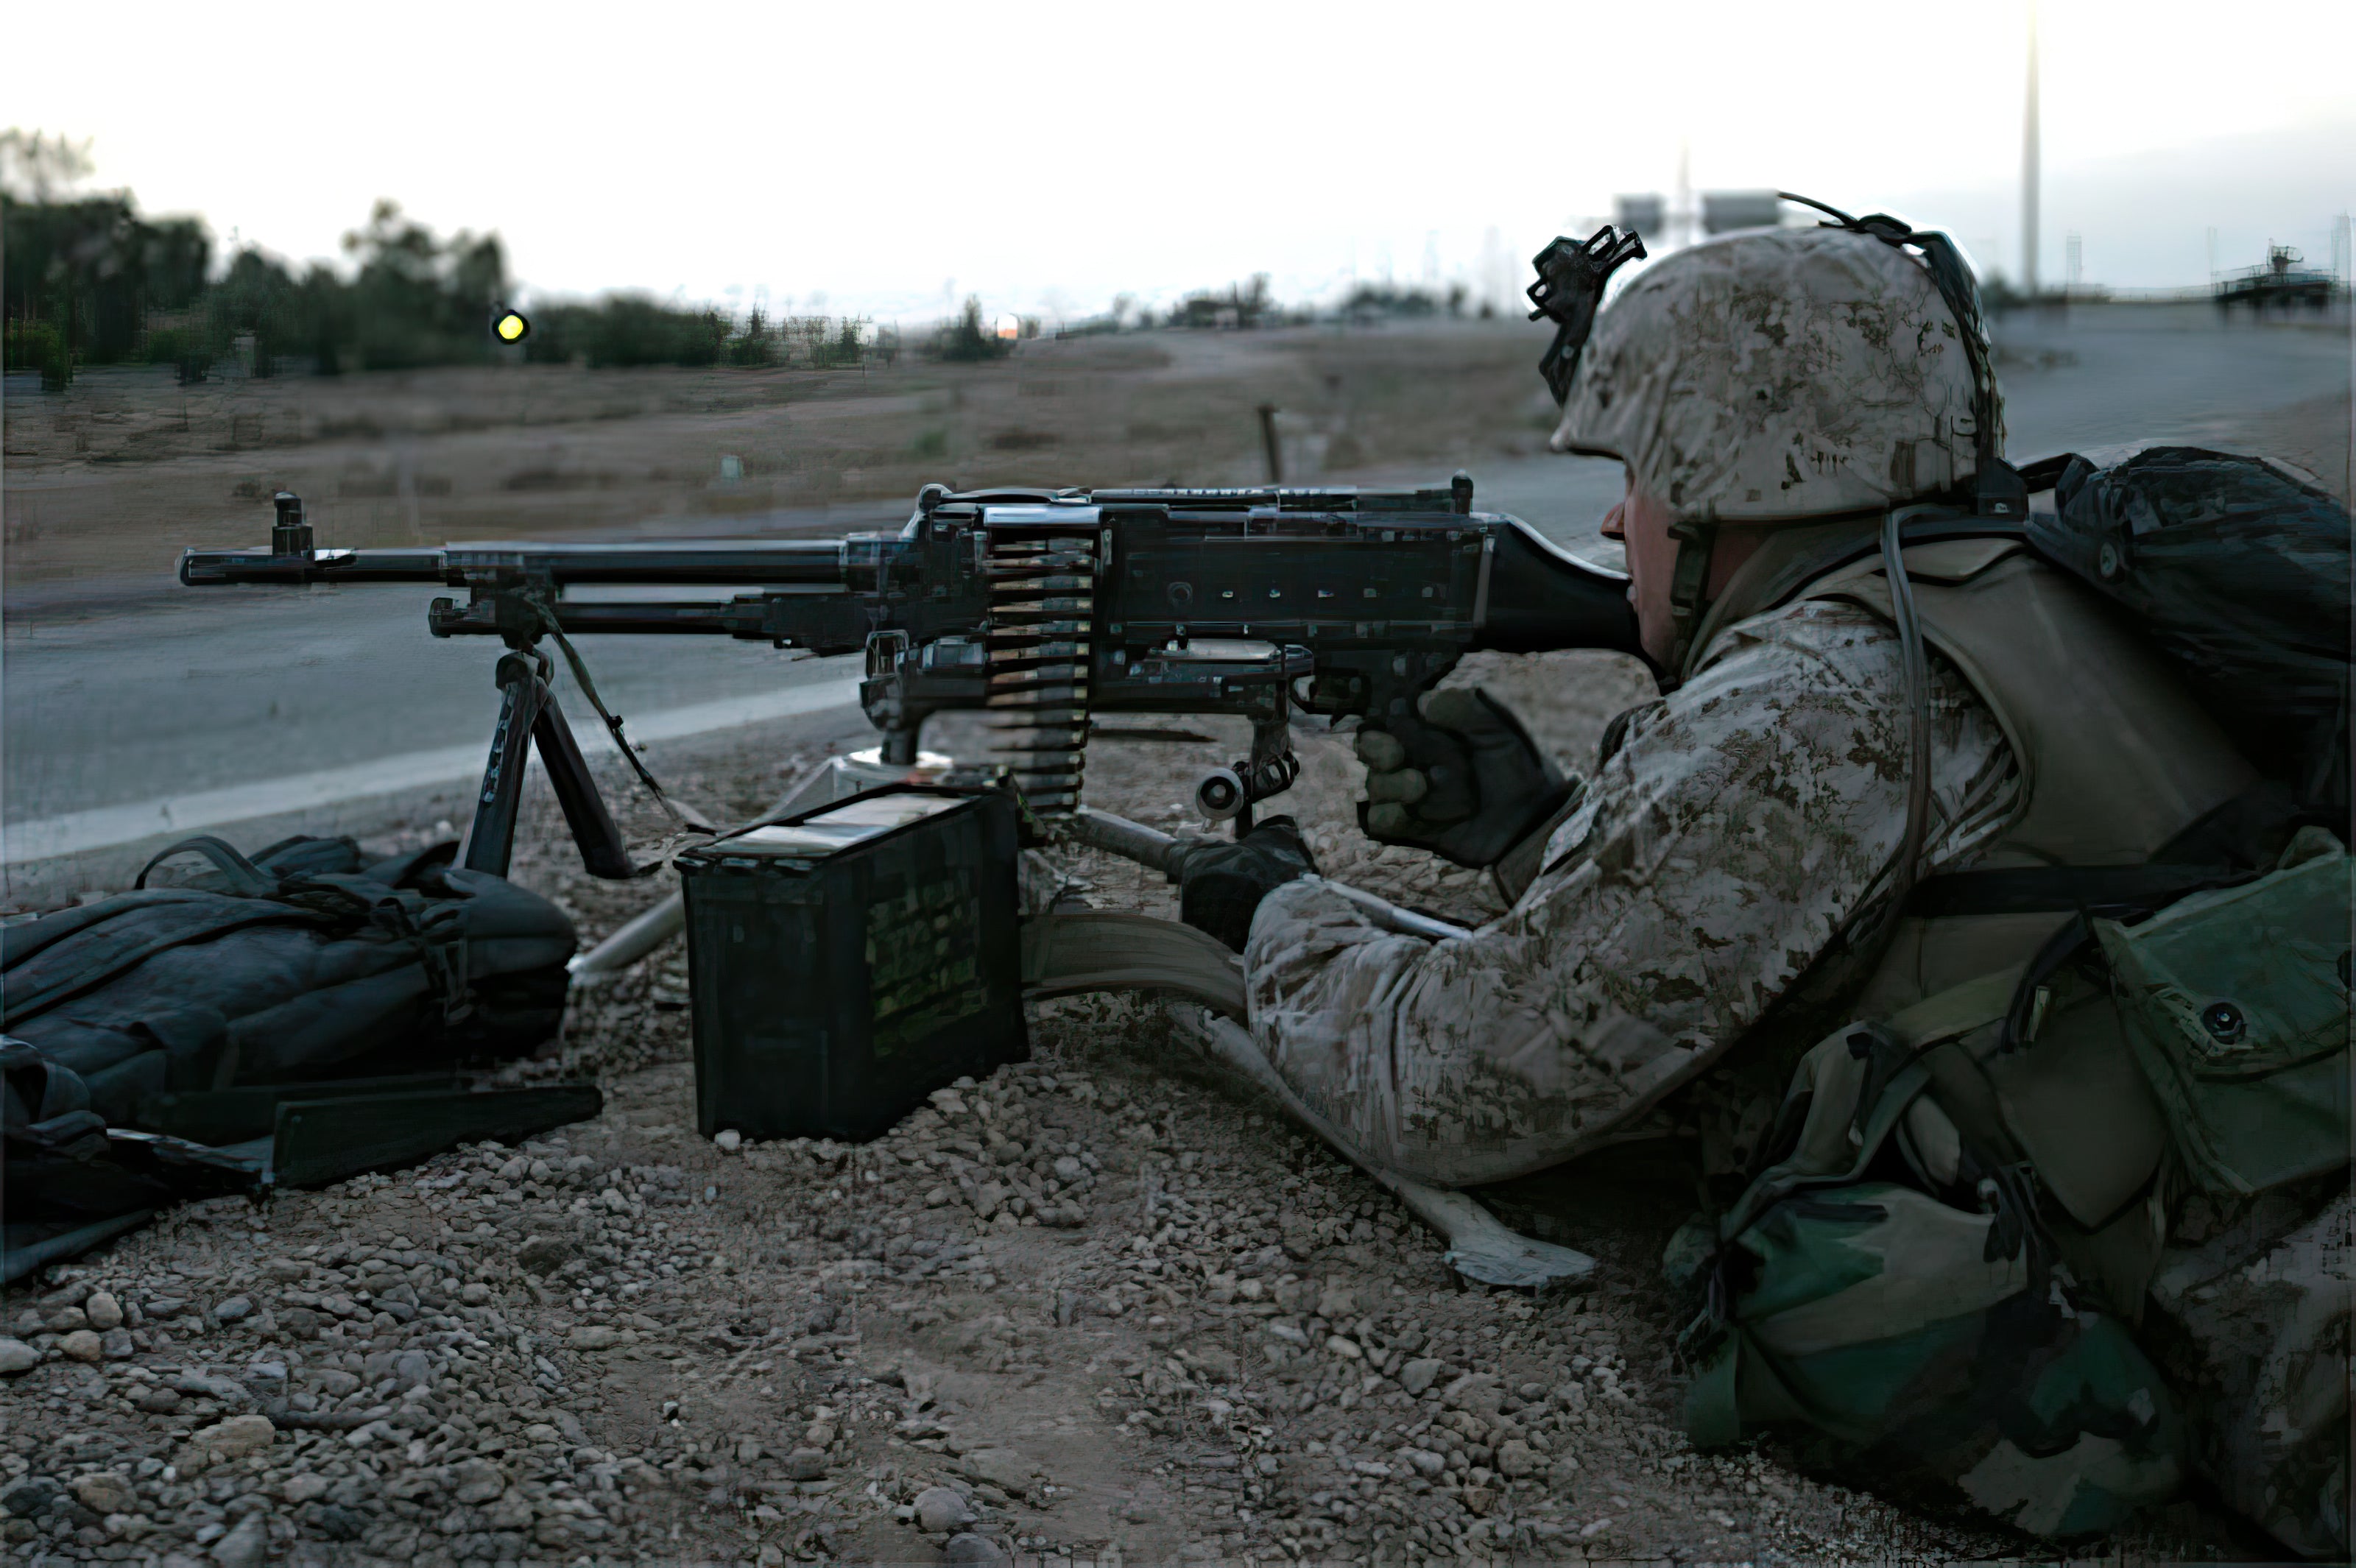 Battlefield Fallujah - Episode 2: A Long, Hot, Dangerous Summer - Image from battle